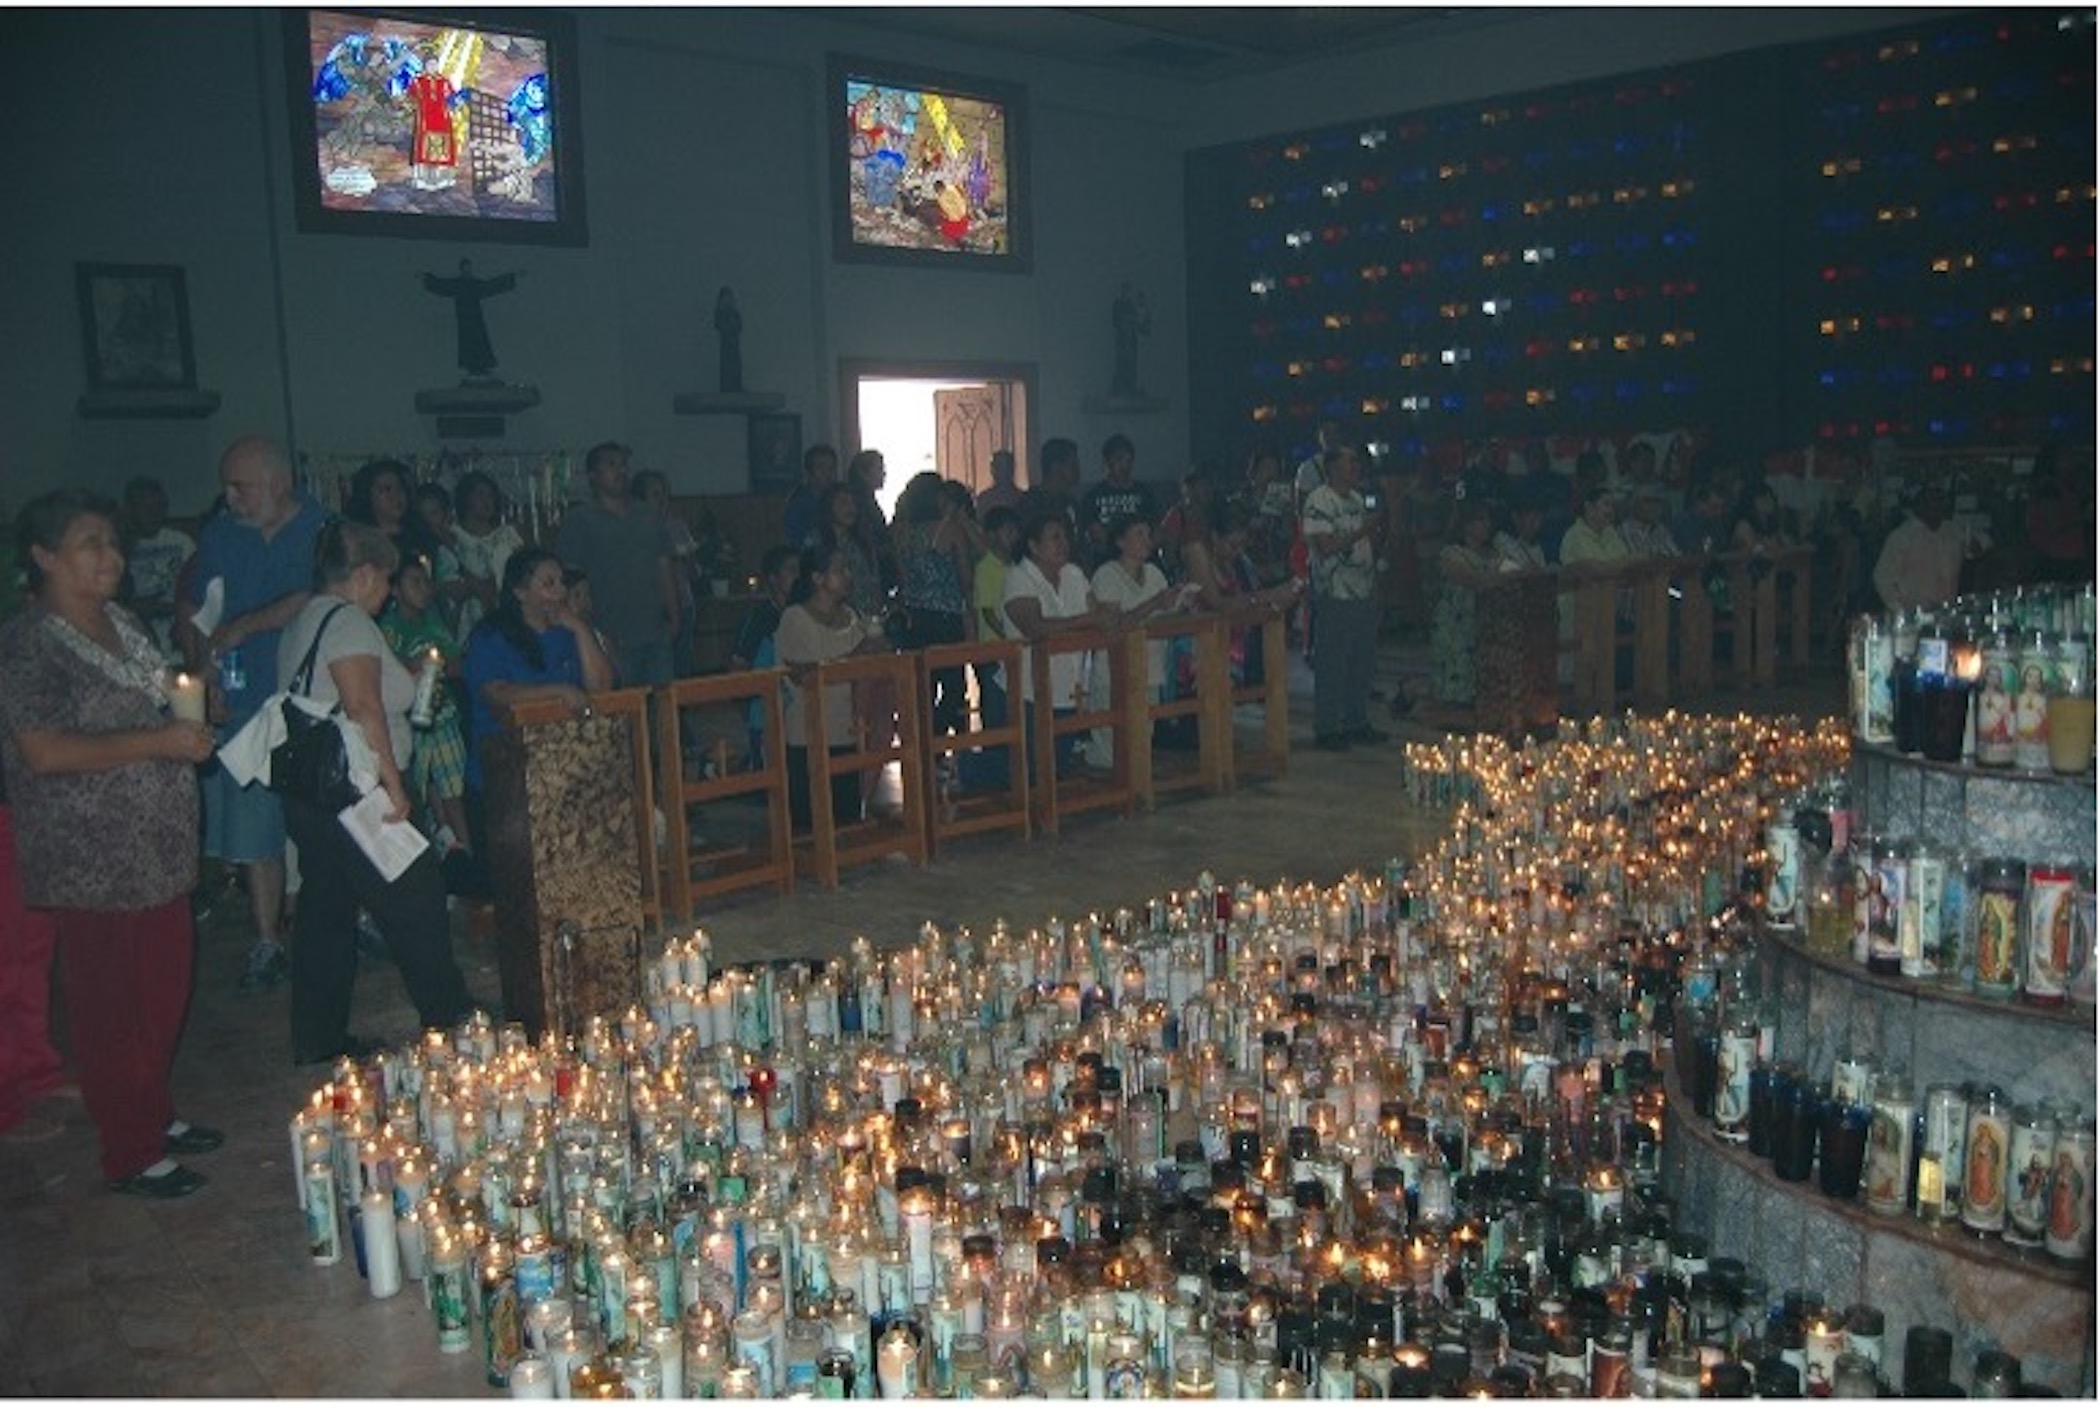 Fieles en el oratorio a San Lorenzo el día
de su fiesta patronal, que se lleva a cabo anualmente el día 10 de agosto en Ciudad
Juárez, Chihuahua, México